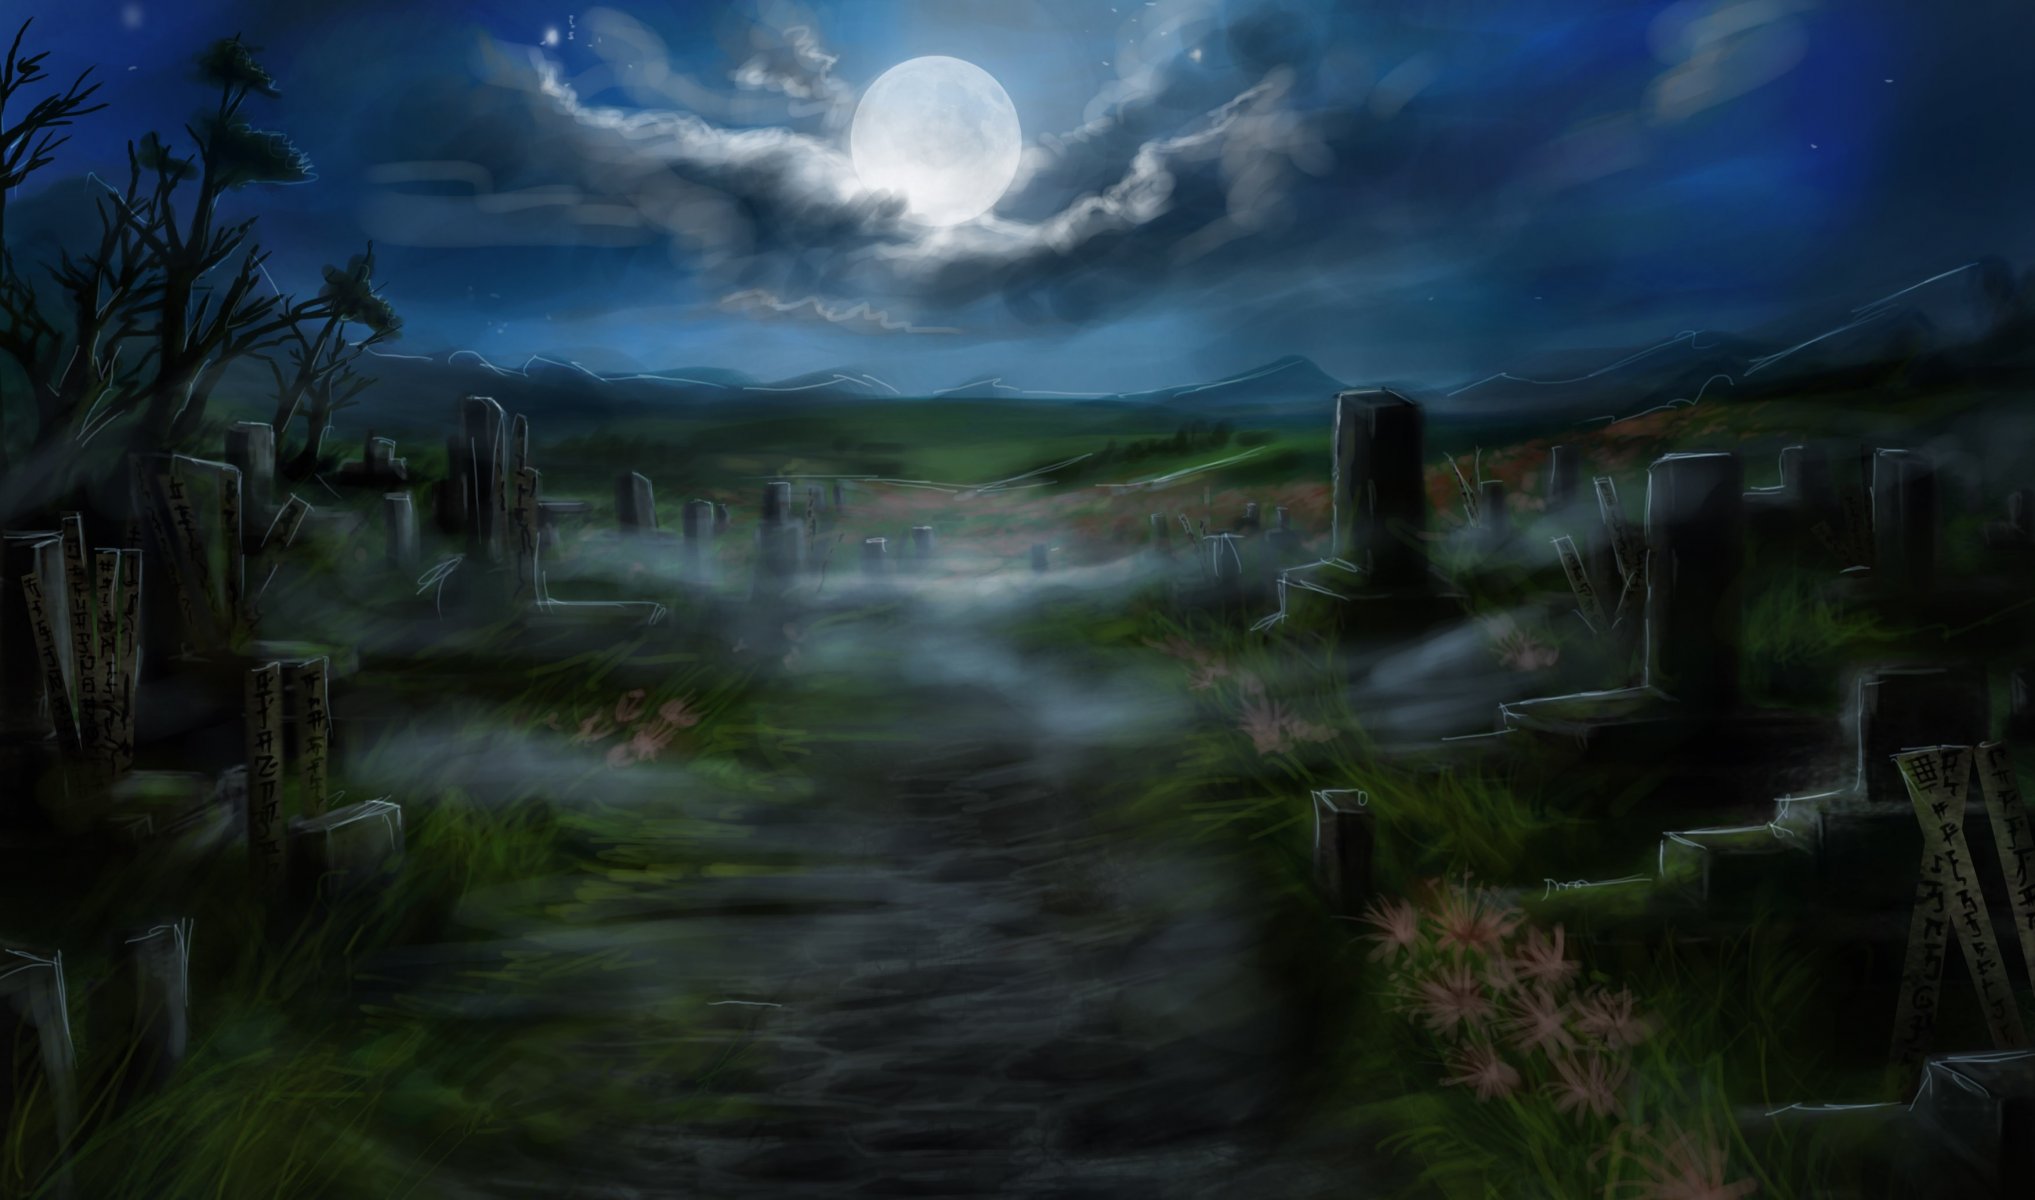 Загадочное кладбище в лунном свете Обои на рабочий стол.